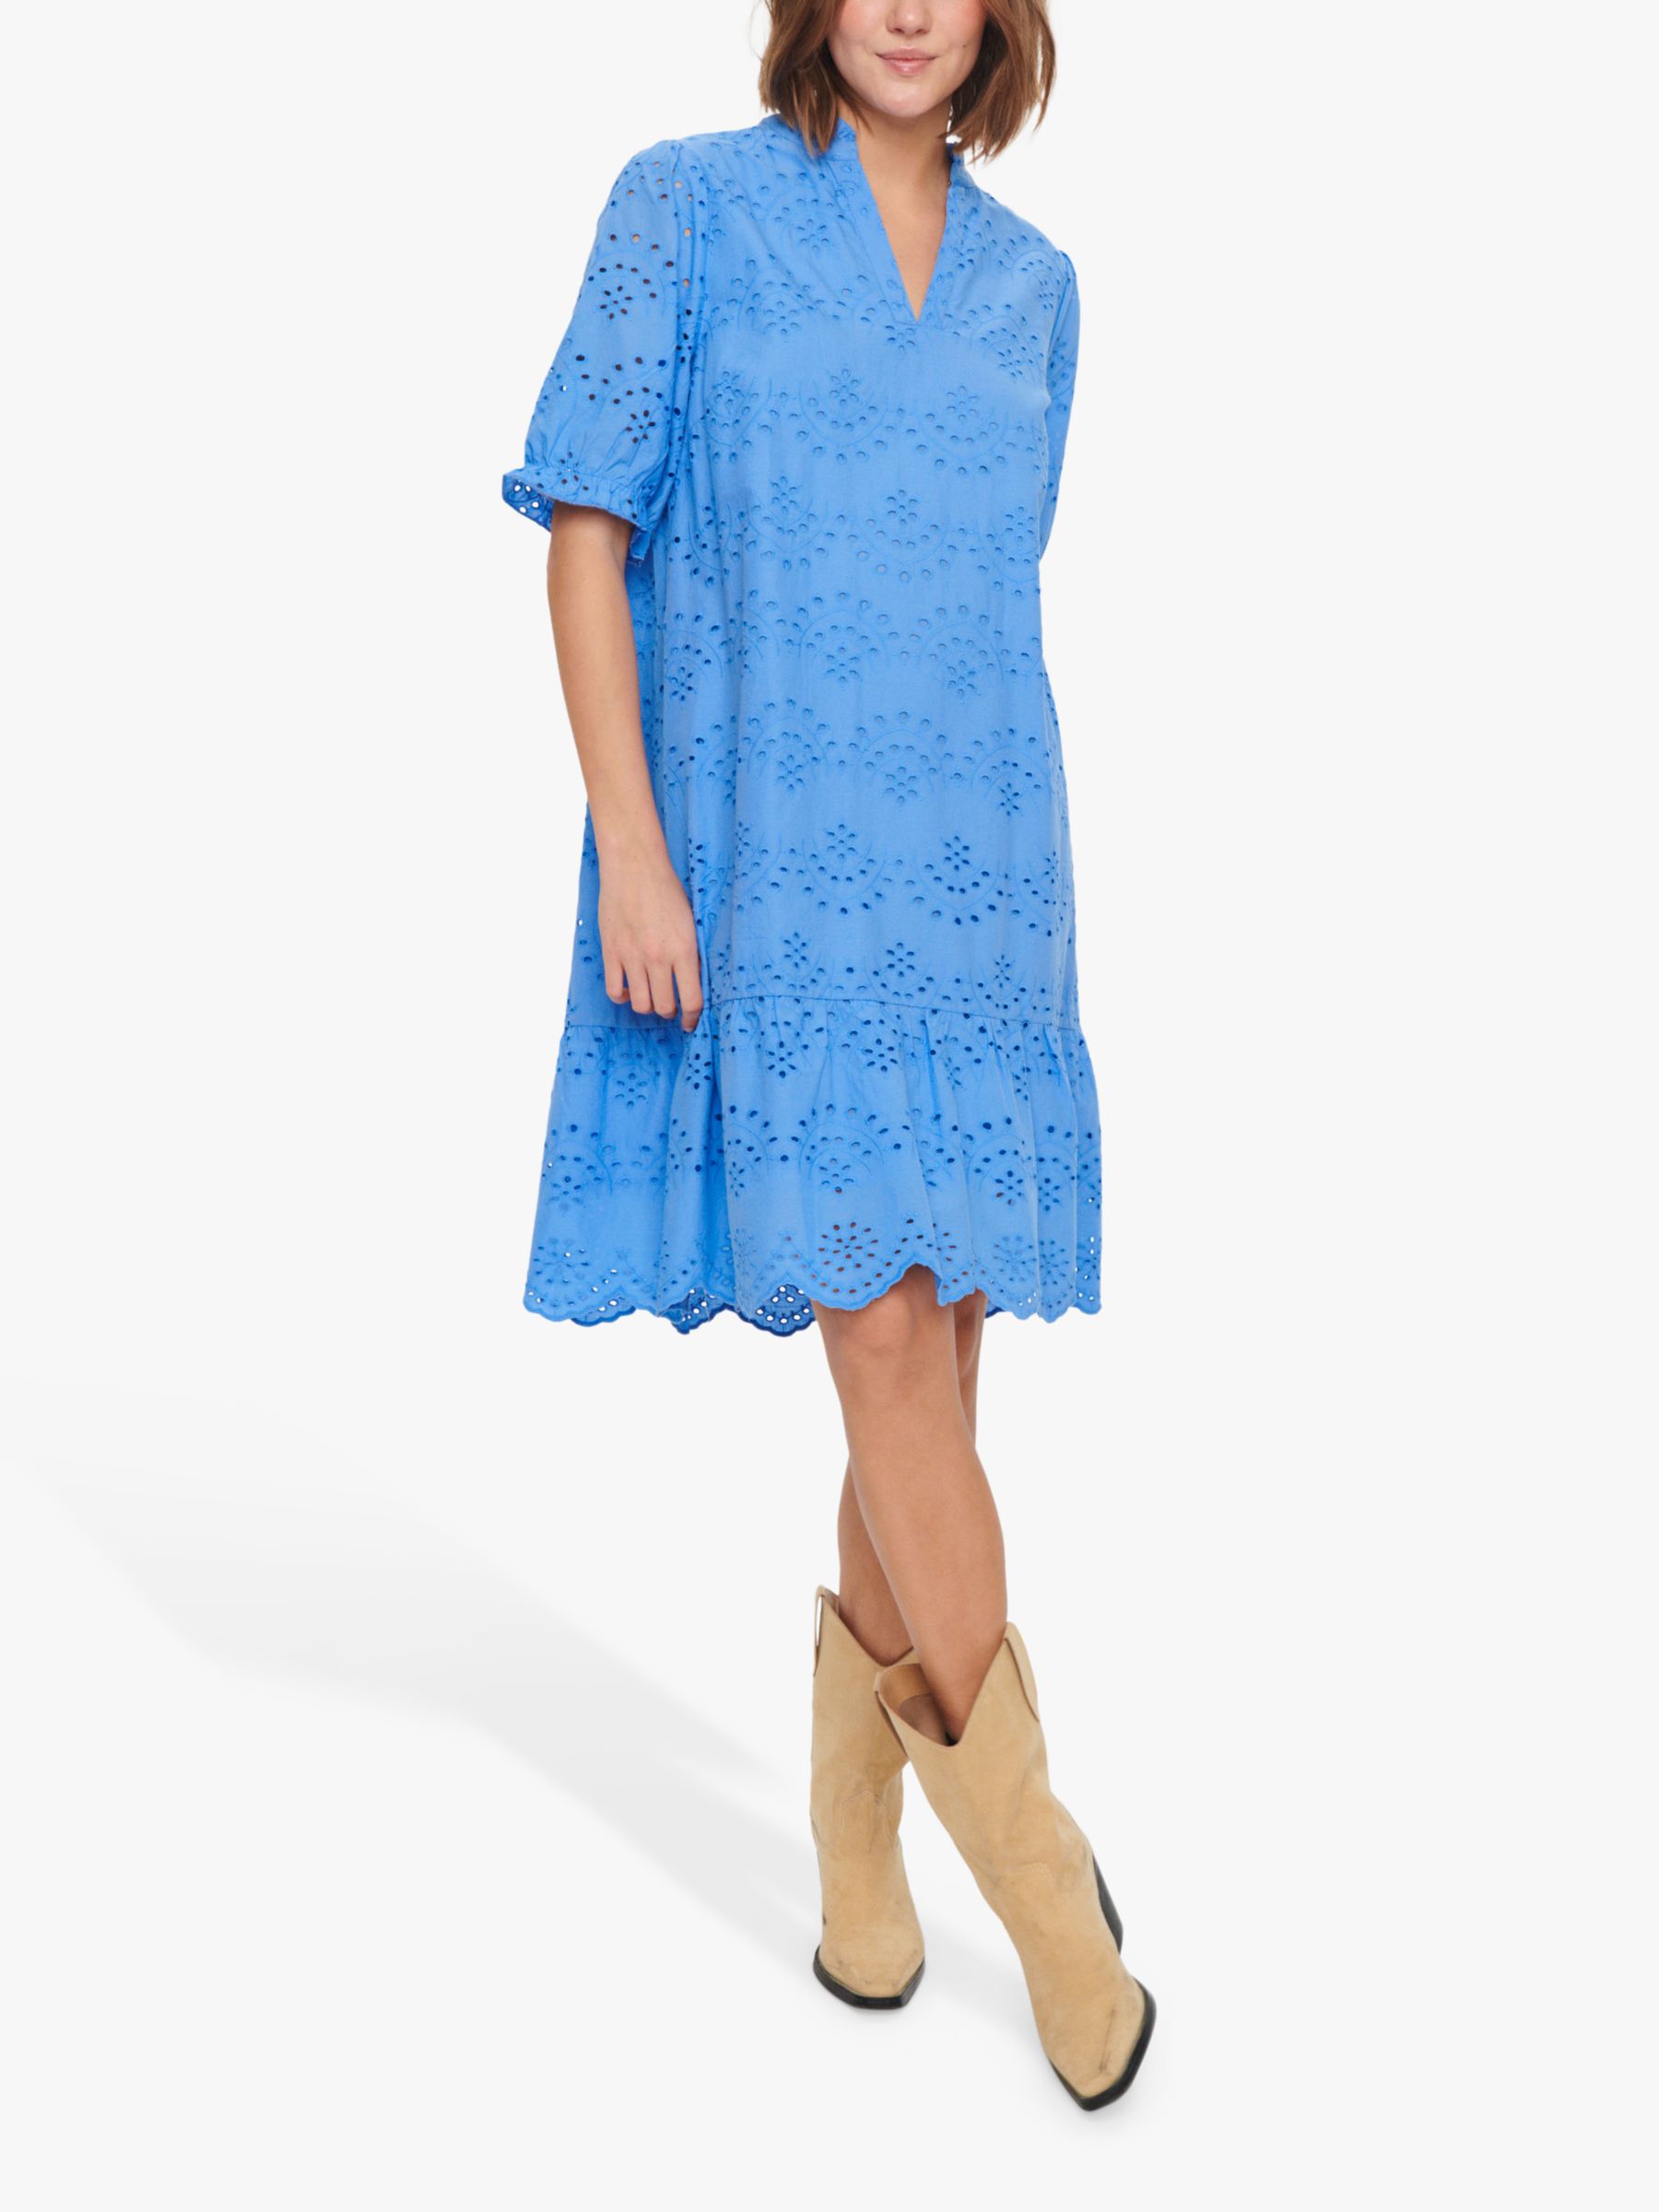 Saint Tropez Geleksa Broderie Anglaise Cotton Dress, Ultramarine, M